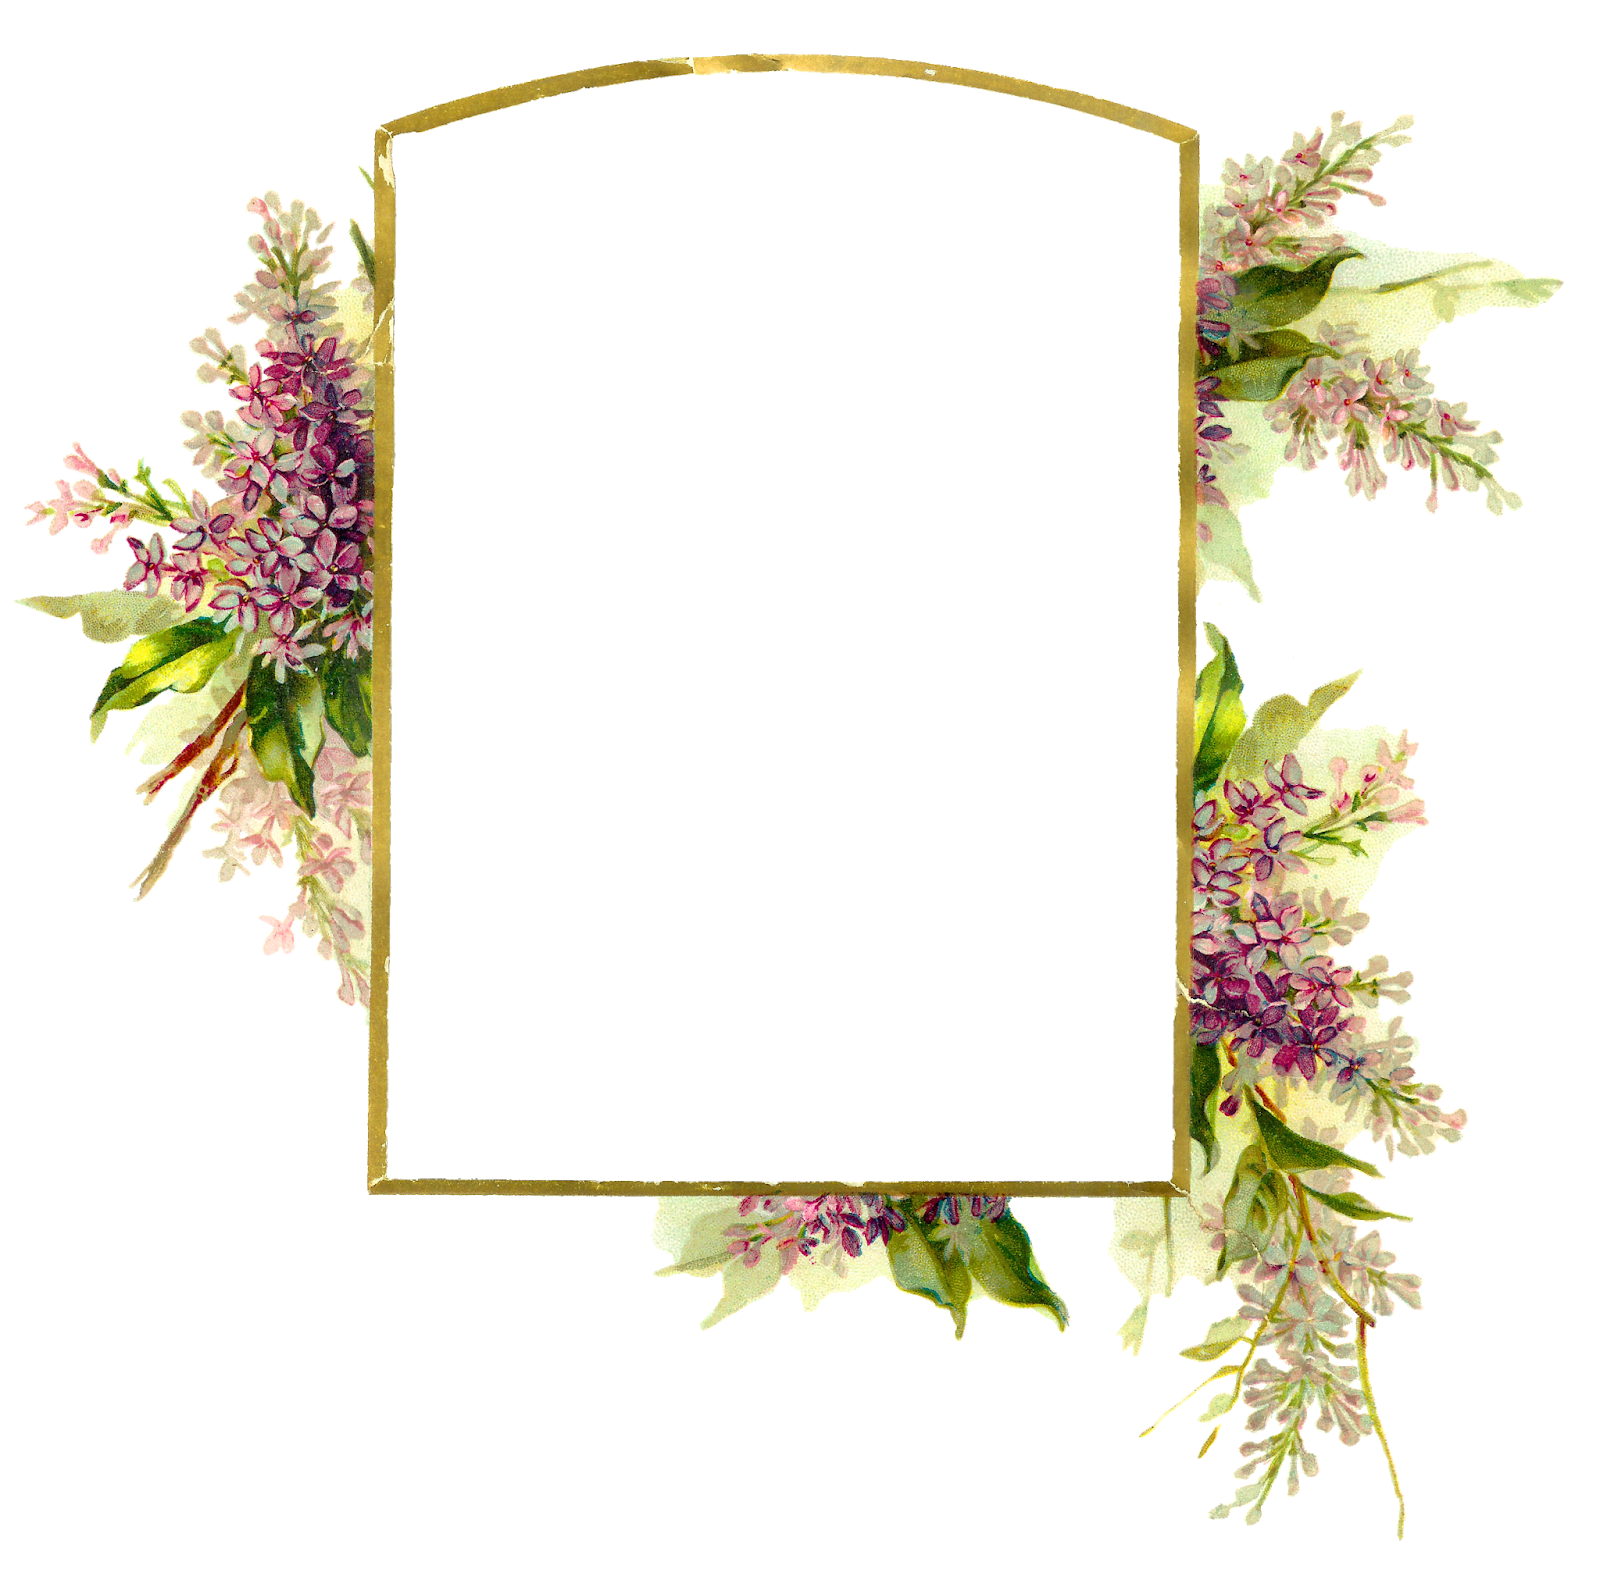 Với khung hình cưới hoa, bạn sẽ có một bức ảnh kỷ niệm ngọt ngào và lãng mạn. Những đóa hoa tinh tế được thiết kế trên khung hình sẽ tạo nên một không gian đẹp mắt đầy cảm xúc cho những khoảnh khắc quan trọng trong hôn nhân của bạn.